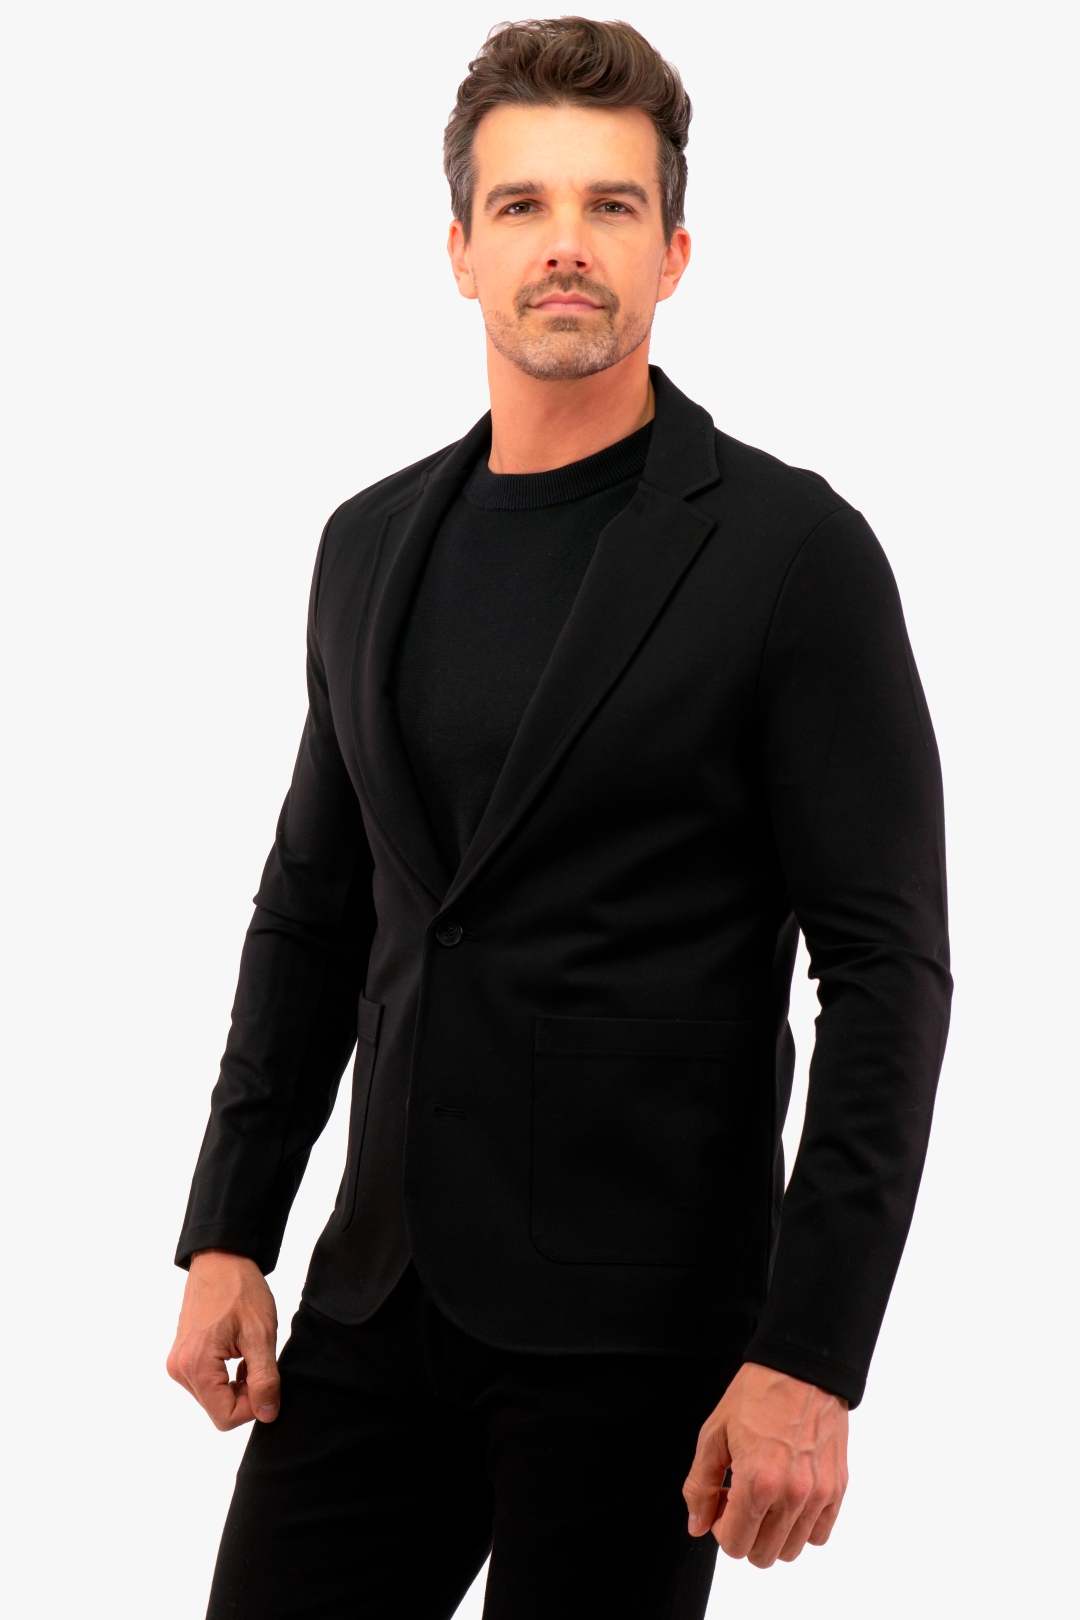 Michael Kors jacket in Black color